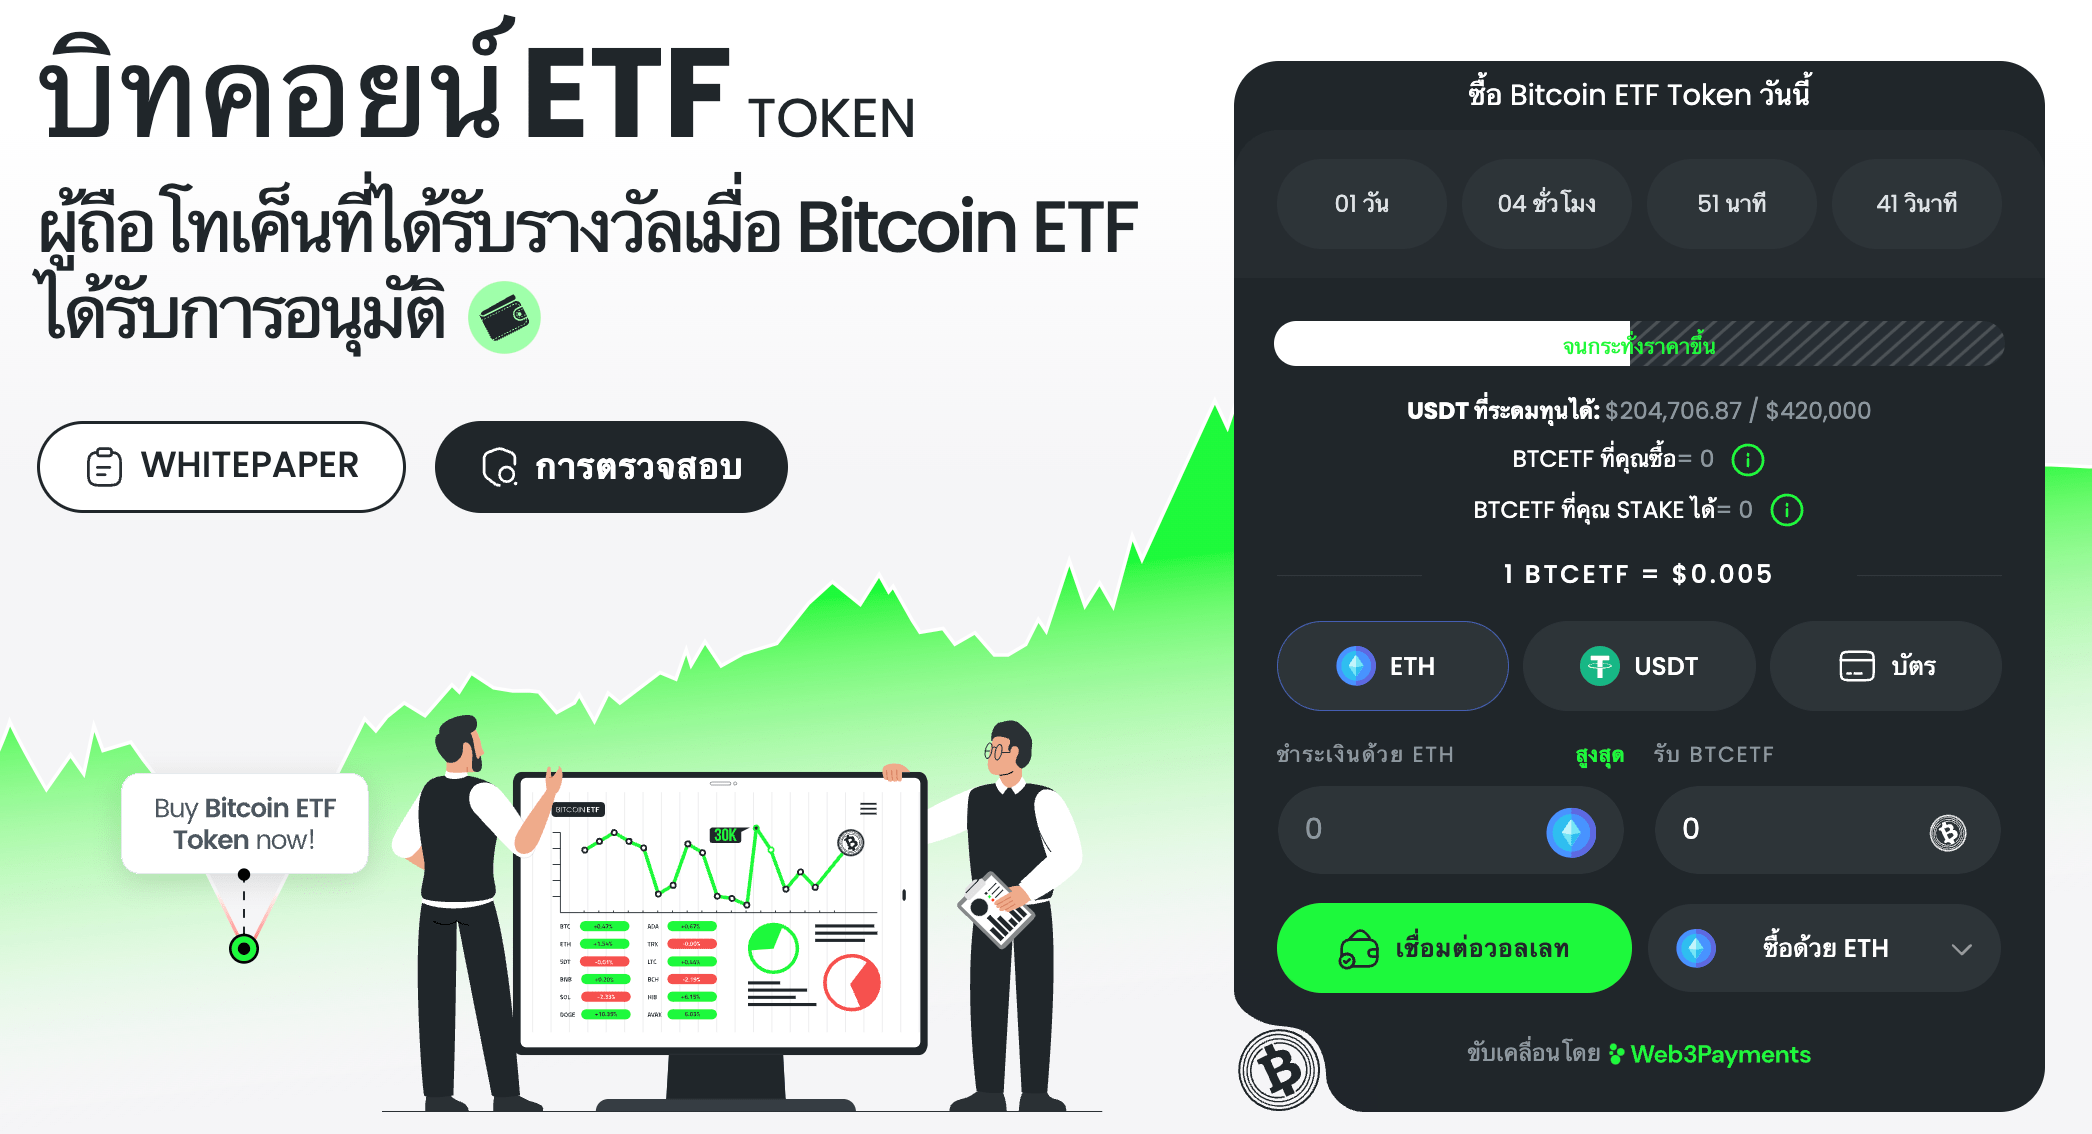 ซื้อ Bitcoin ETF Token